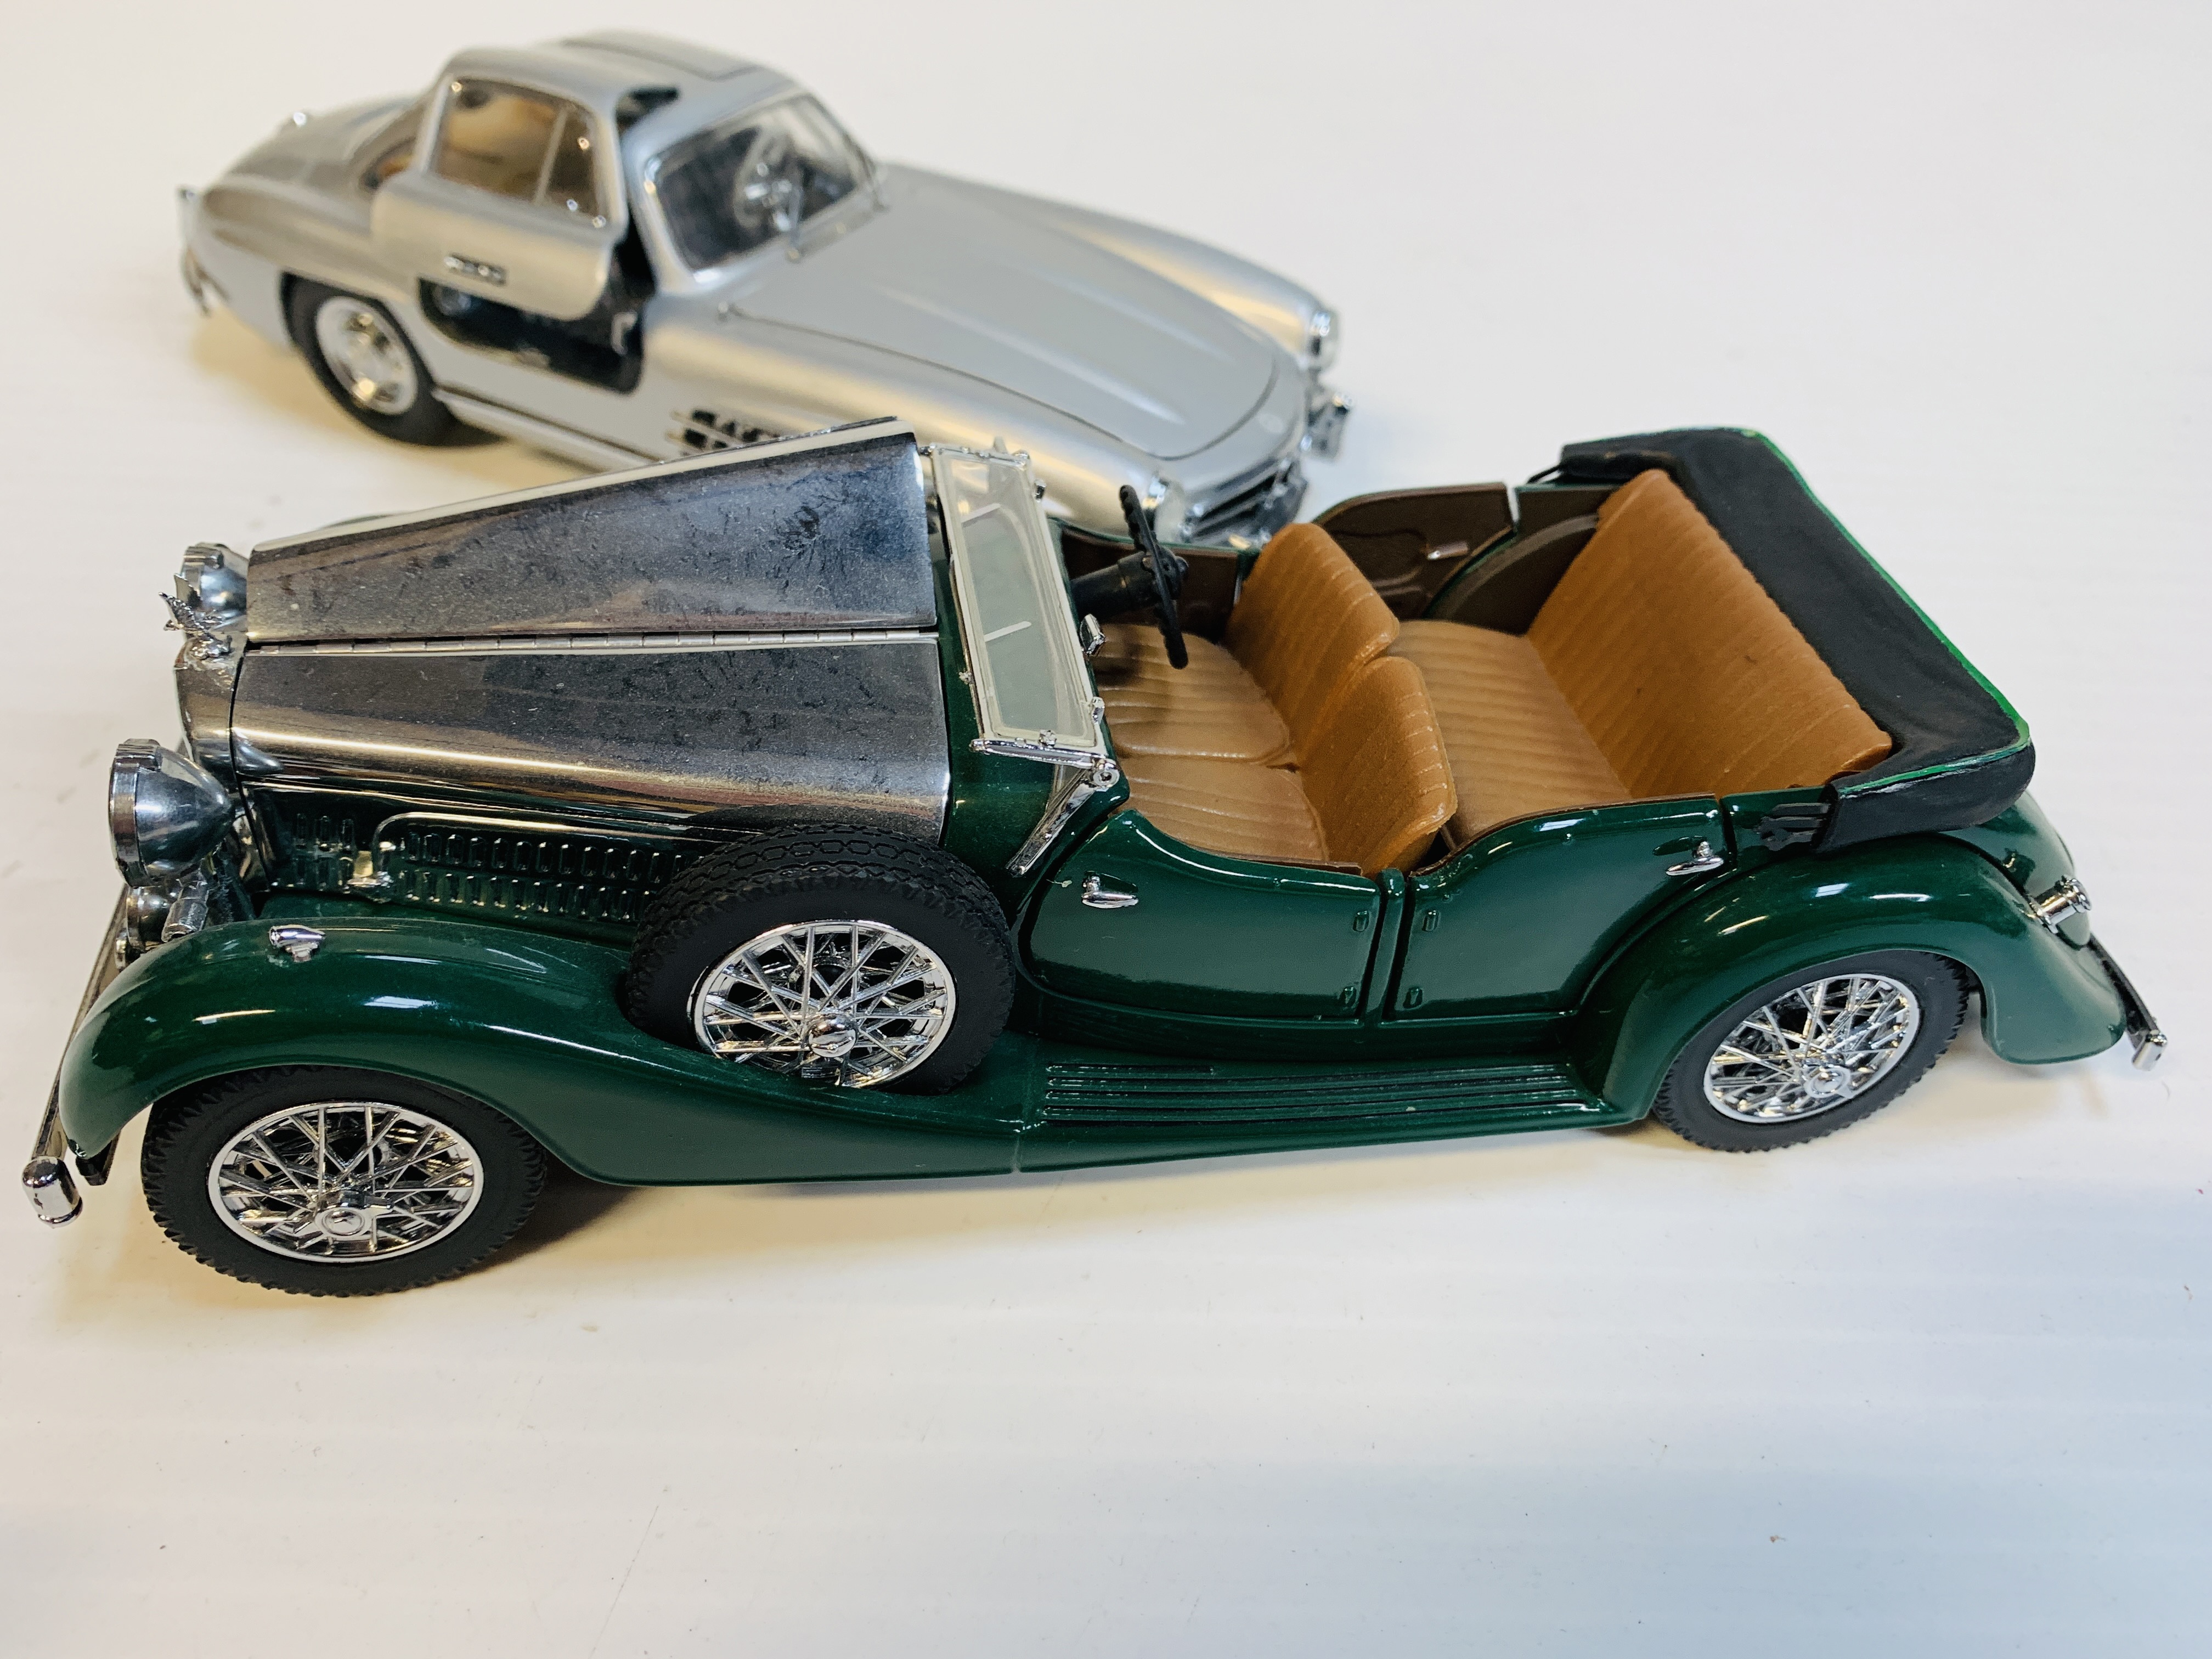 1938 Alvis 4.3 litre and a 1954 Mercedes Benz 300SL